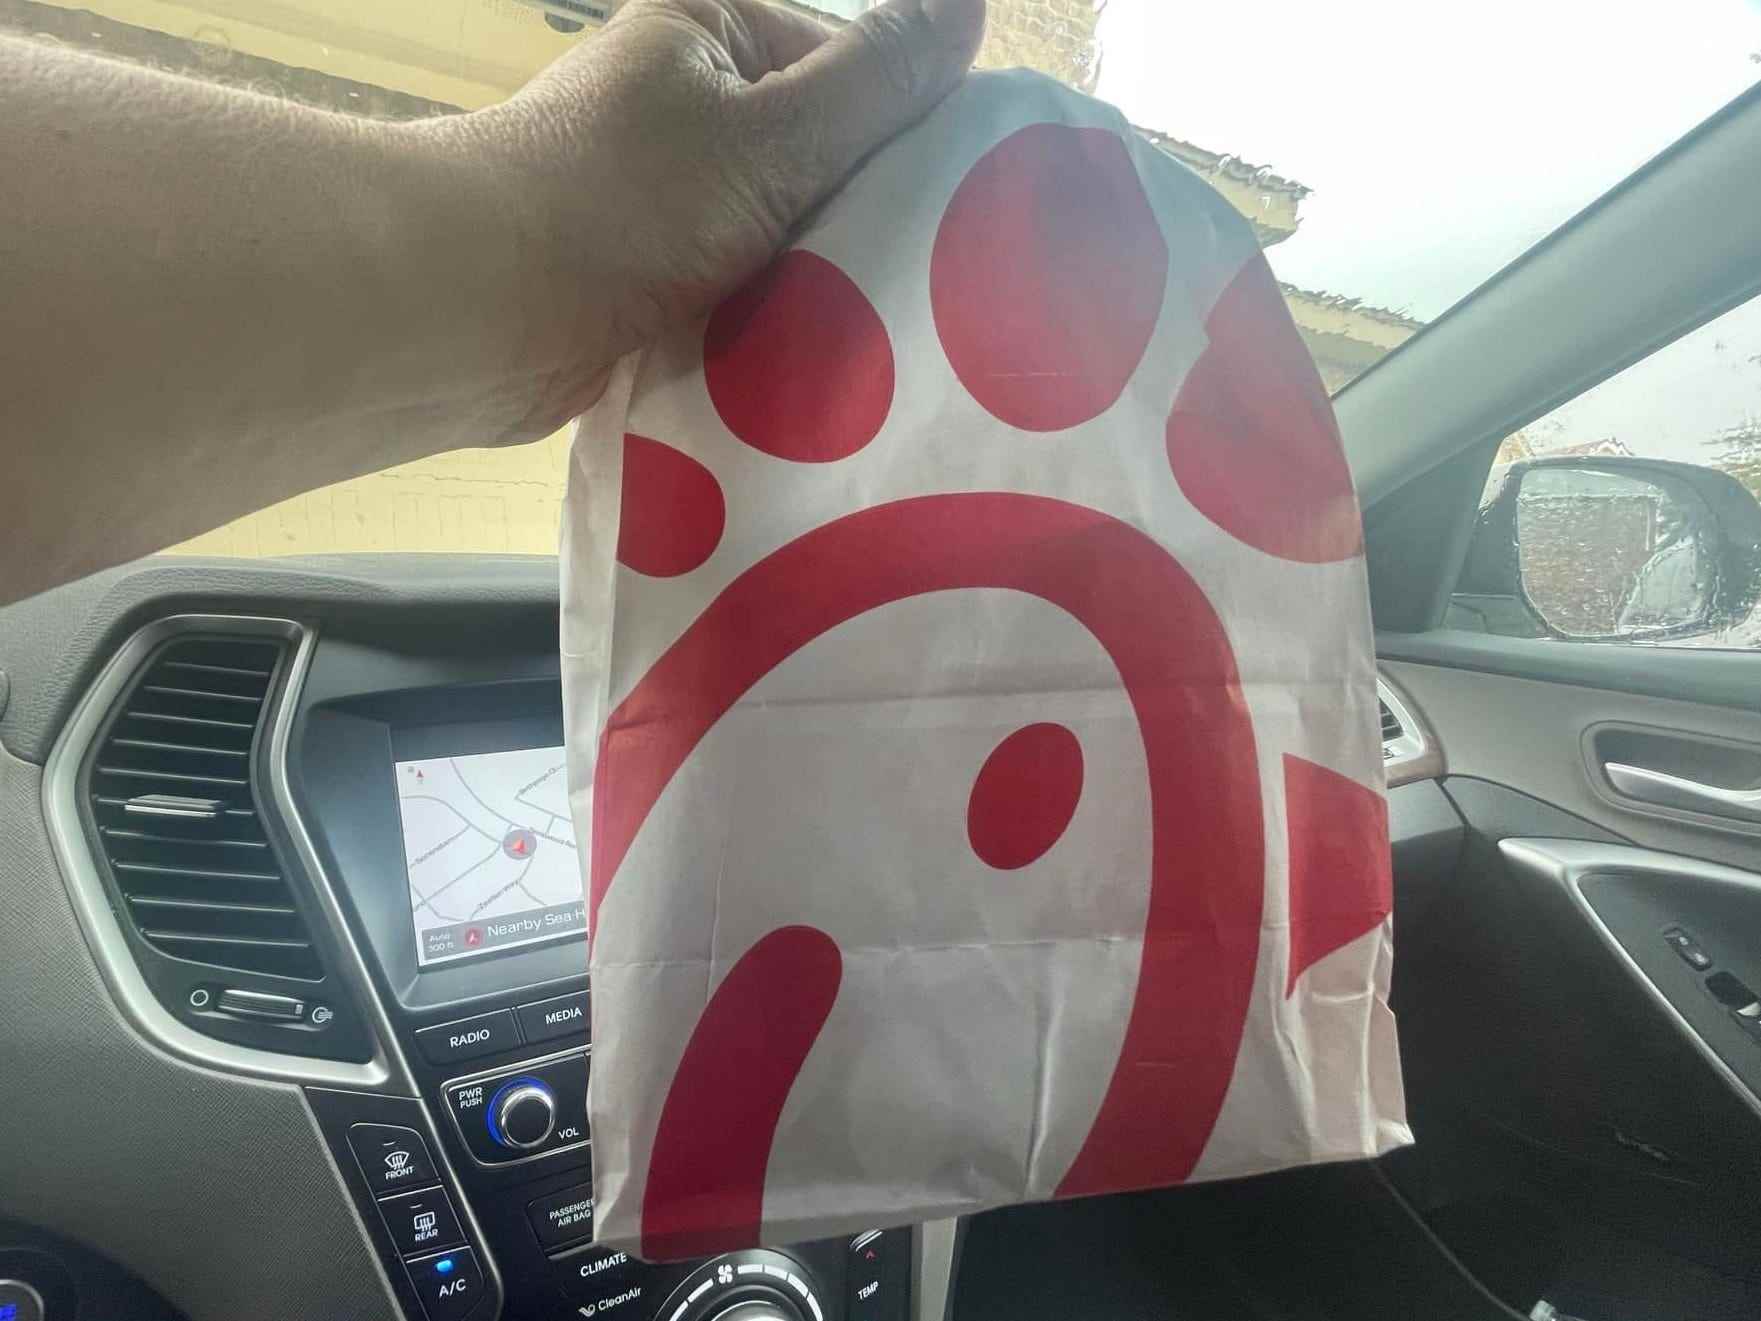 Der Schriftsteller hält eine Tasche mit Chick-fil-A-Logo darauf in einem Auto